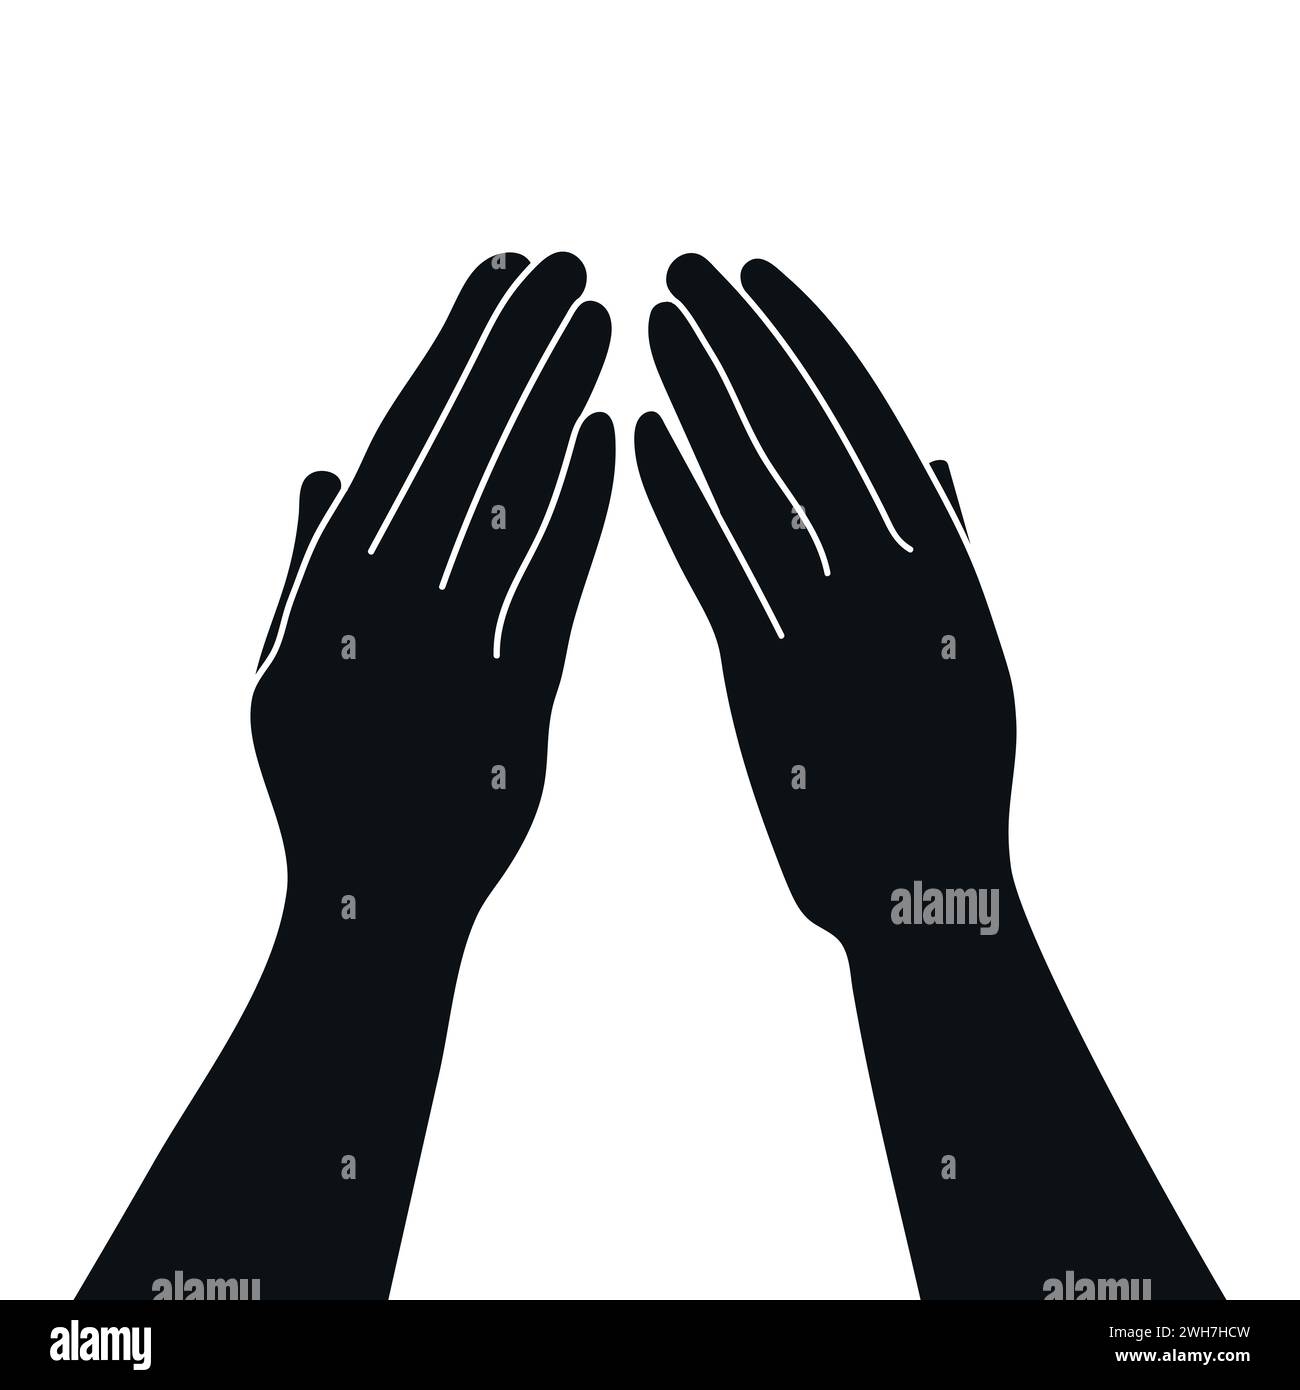 Die Silhouette der Hände bei der Bedeckungsgeste. Handgezeichnete Vektorgrafik Stock Vektor